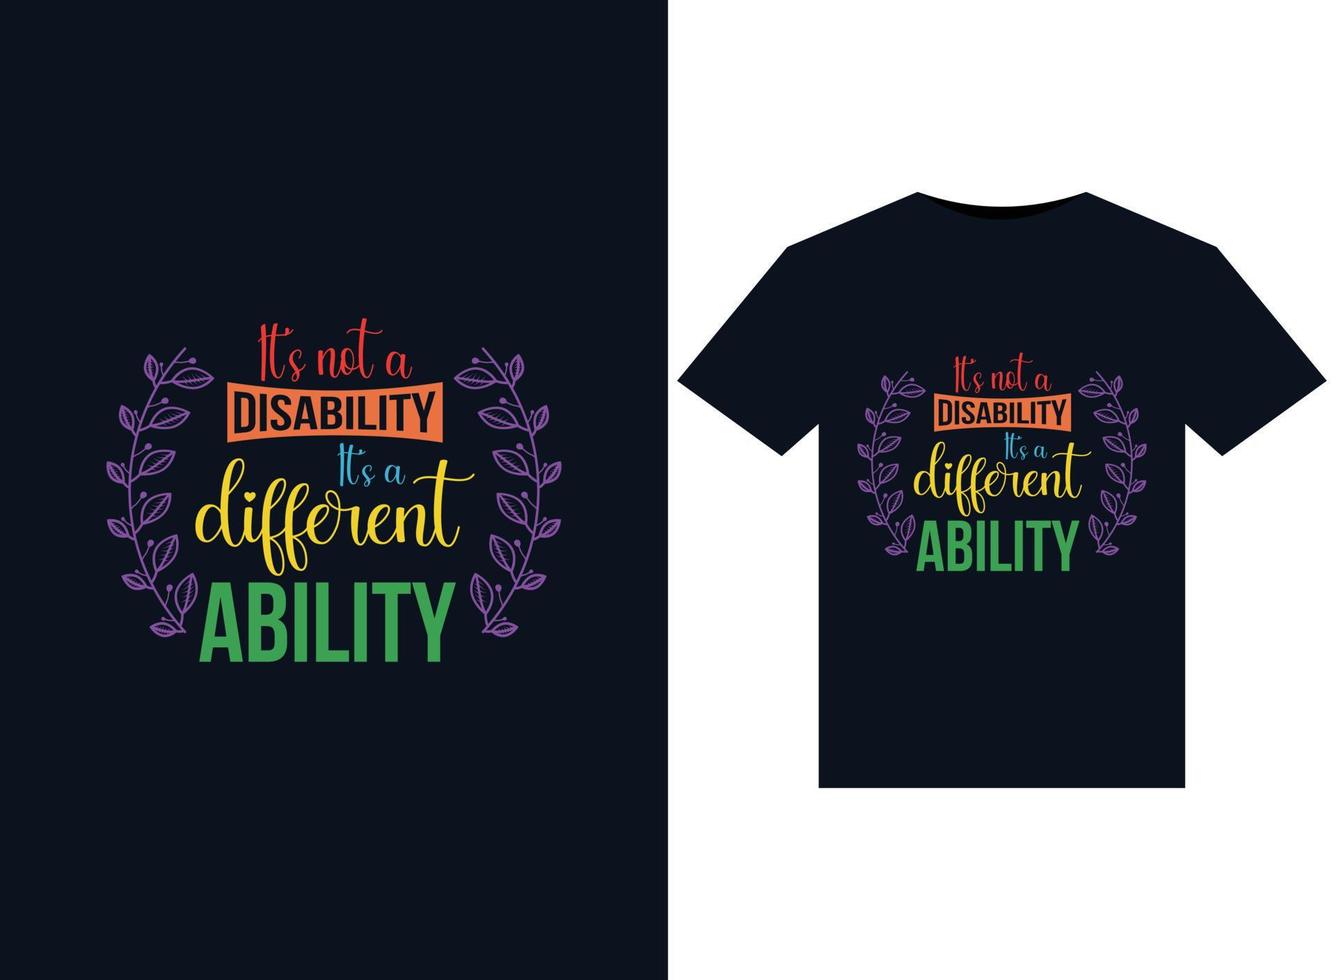 ce n'est pas un handicap, c'est une capacité différente illustrations pour la conception de t-shirts prêts à imprimer vecteur